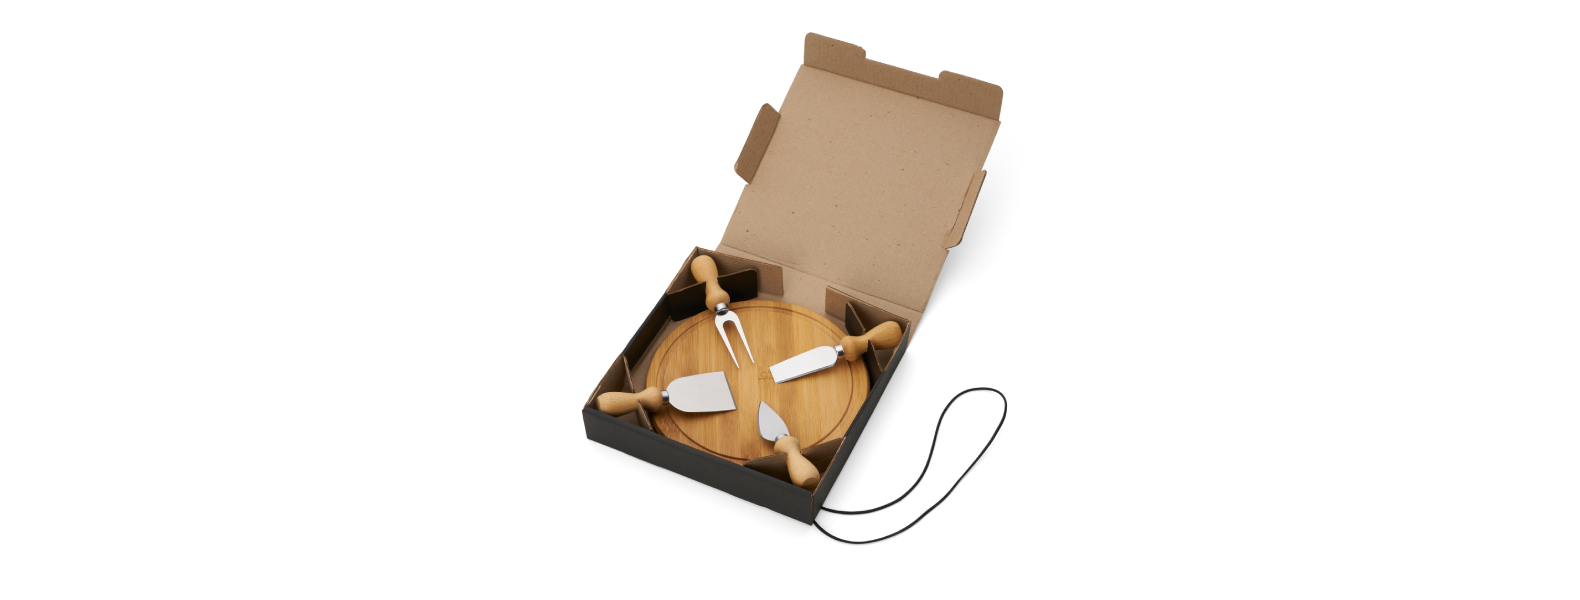 Kit para queijo. Conta com tábua redonda em bambu; três facas e garfo para queijos. Tábua confeccionada com tripla camada invertida, para dar maior durabilidade e não deformar com o passar do tempo.